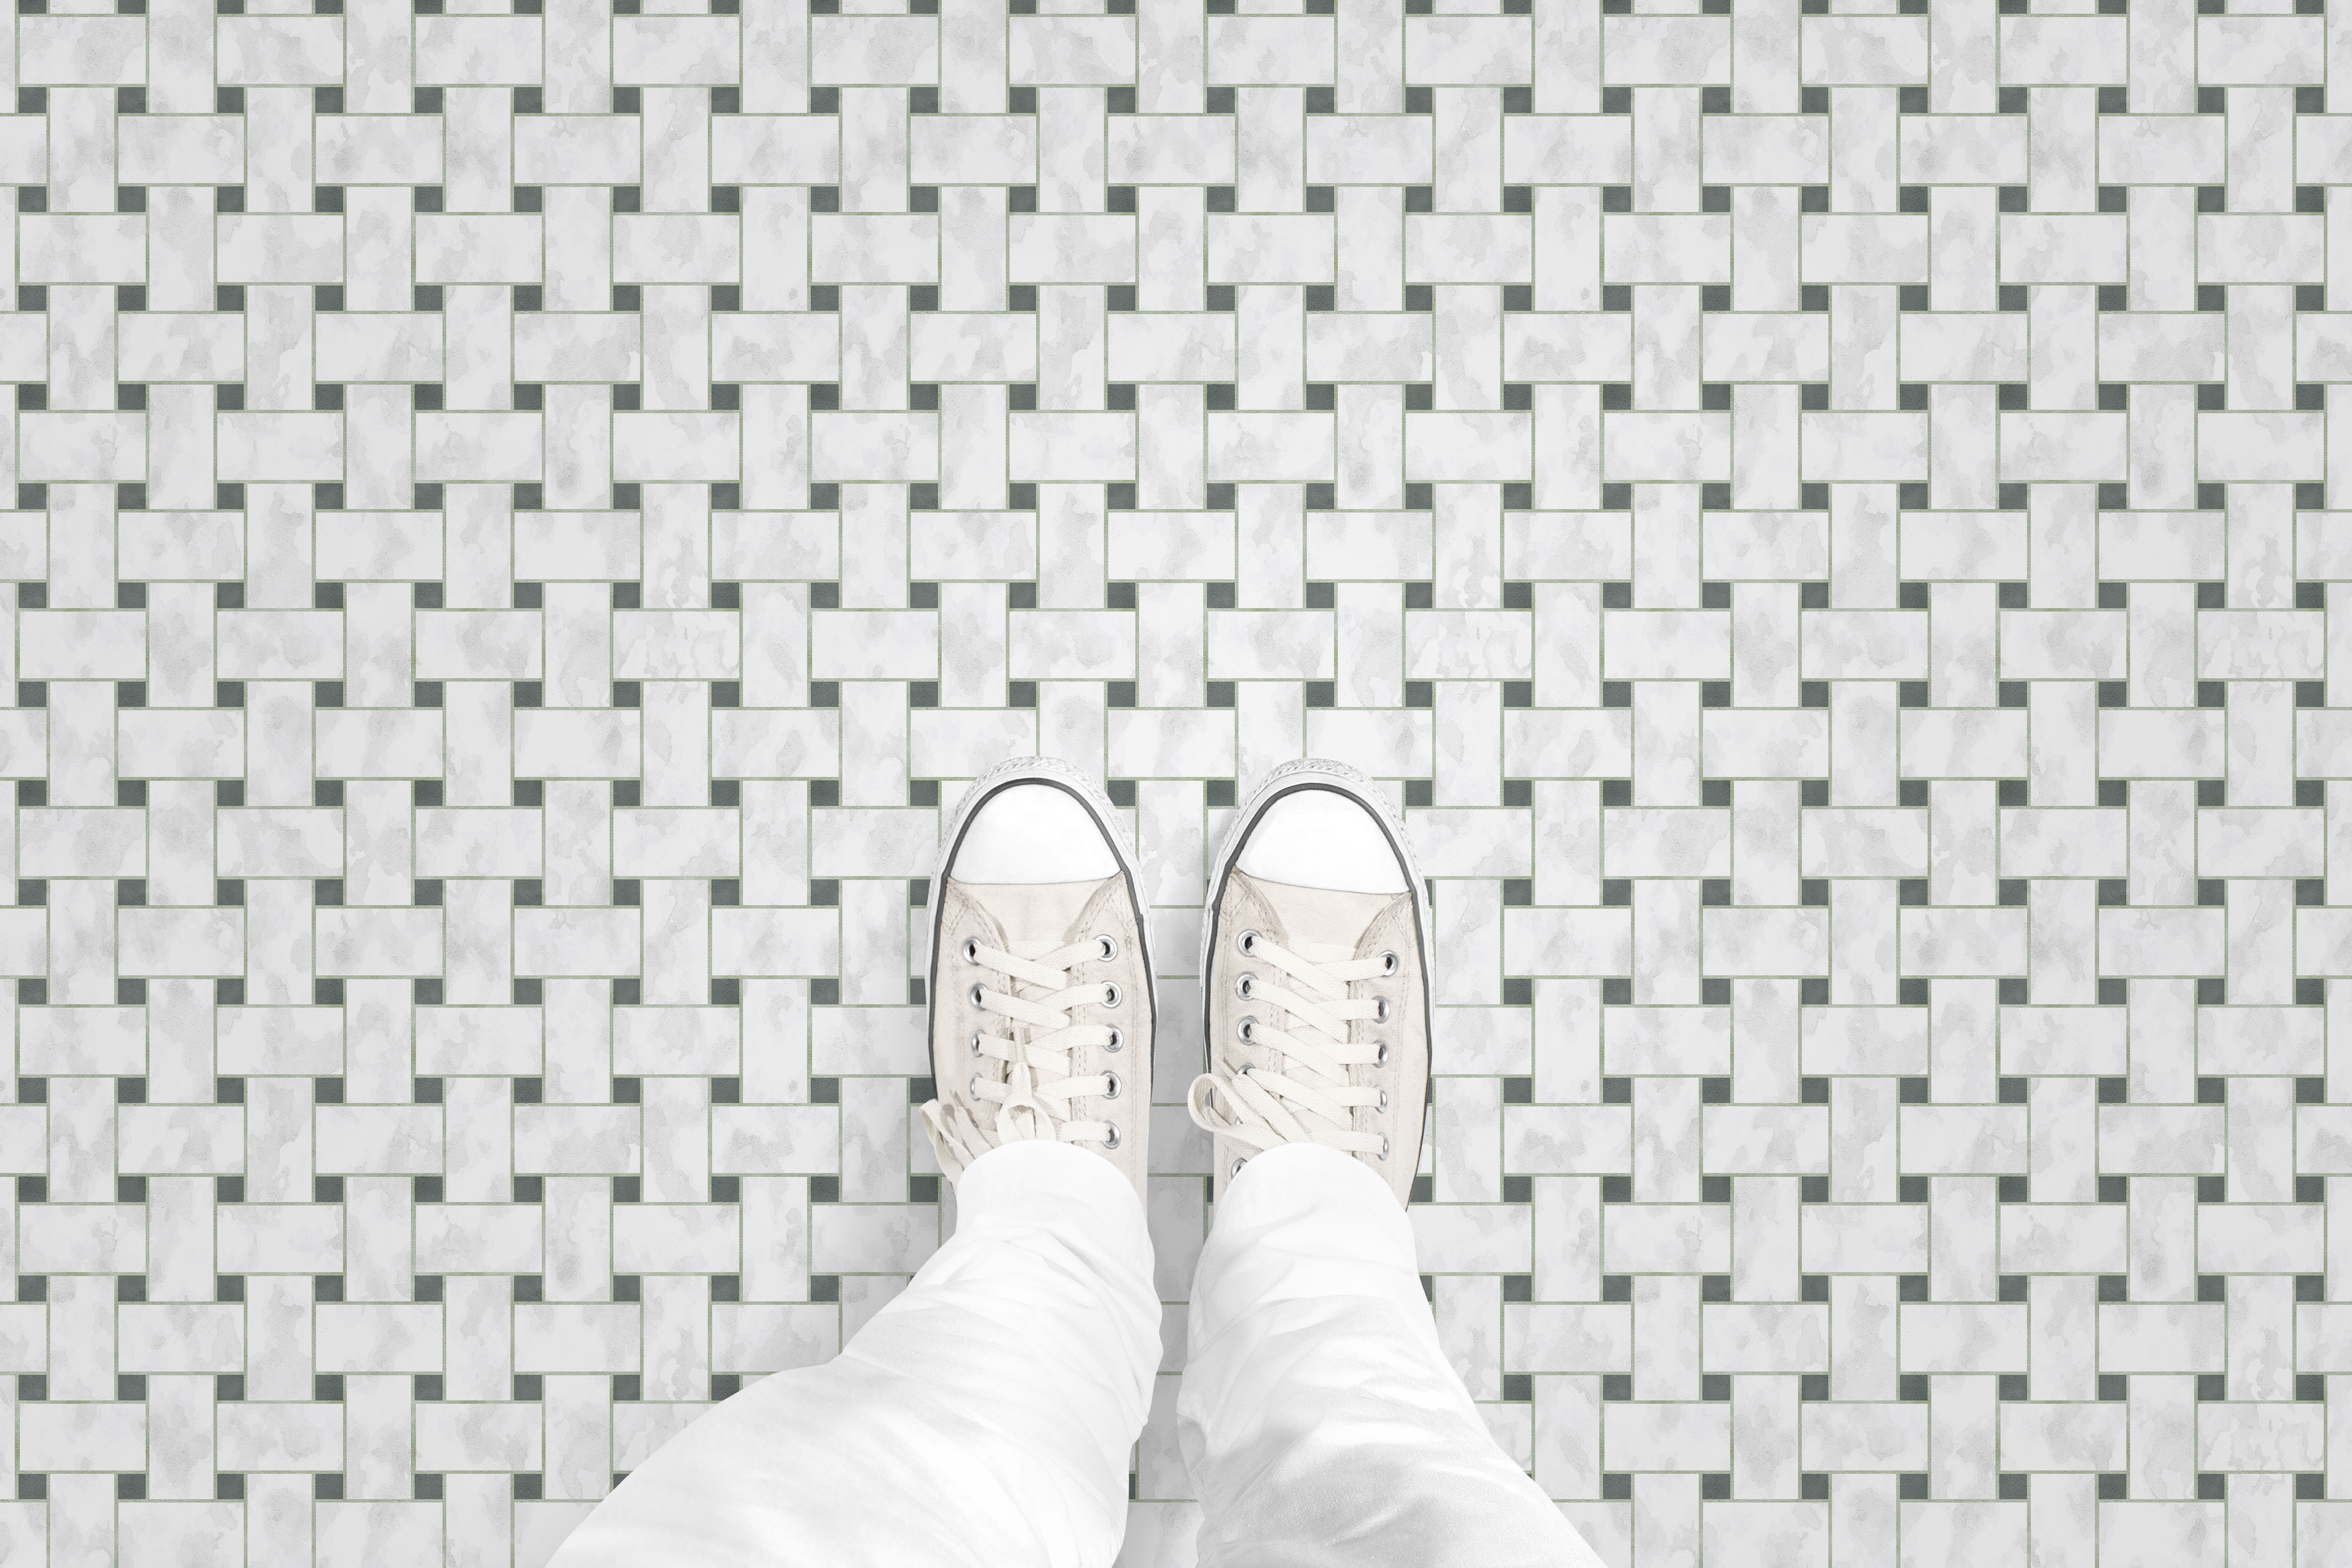 Woven Tile floor_feet_shop.gif_p2231a1.jpg